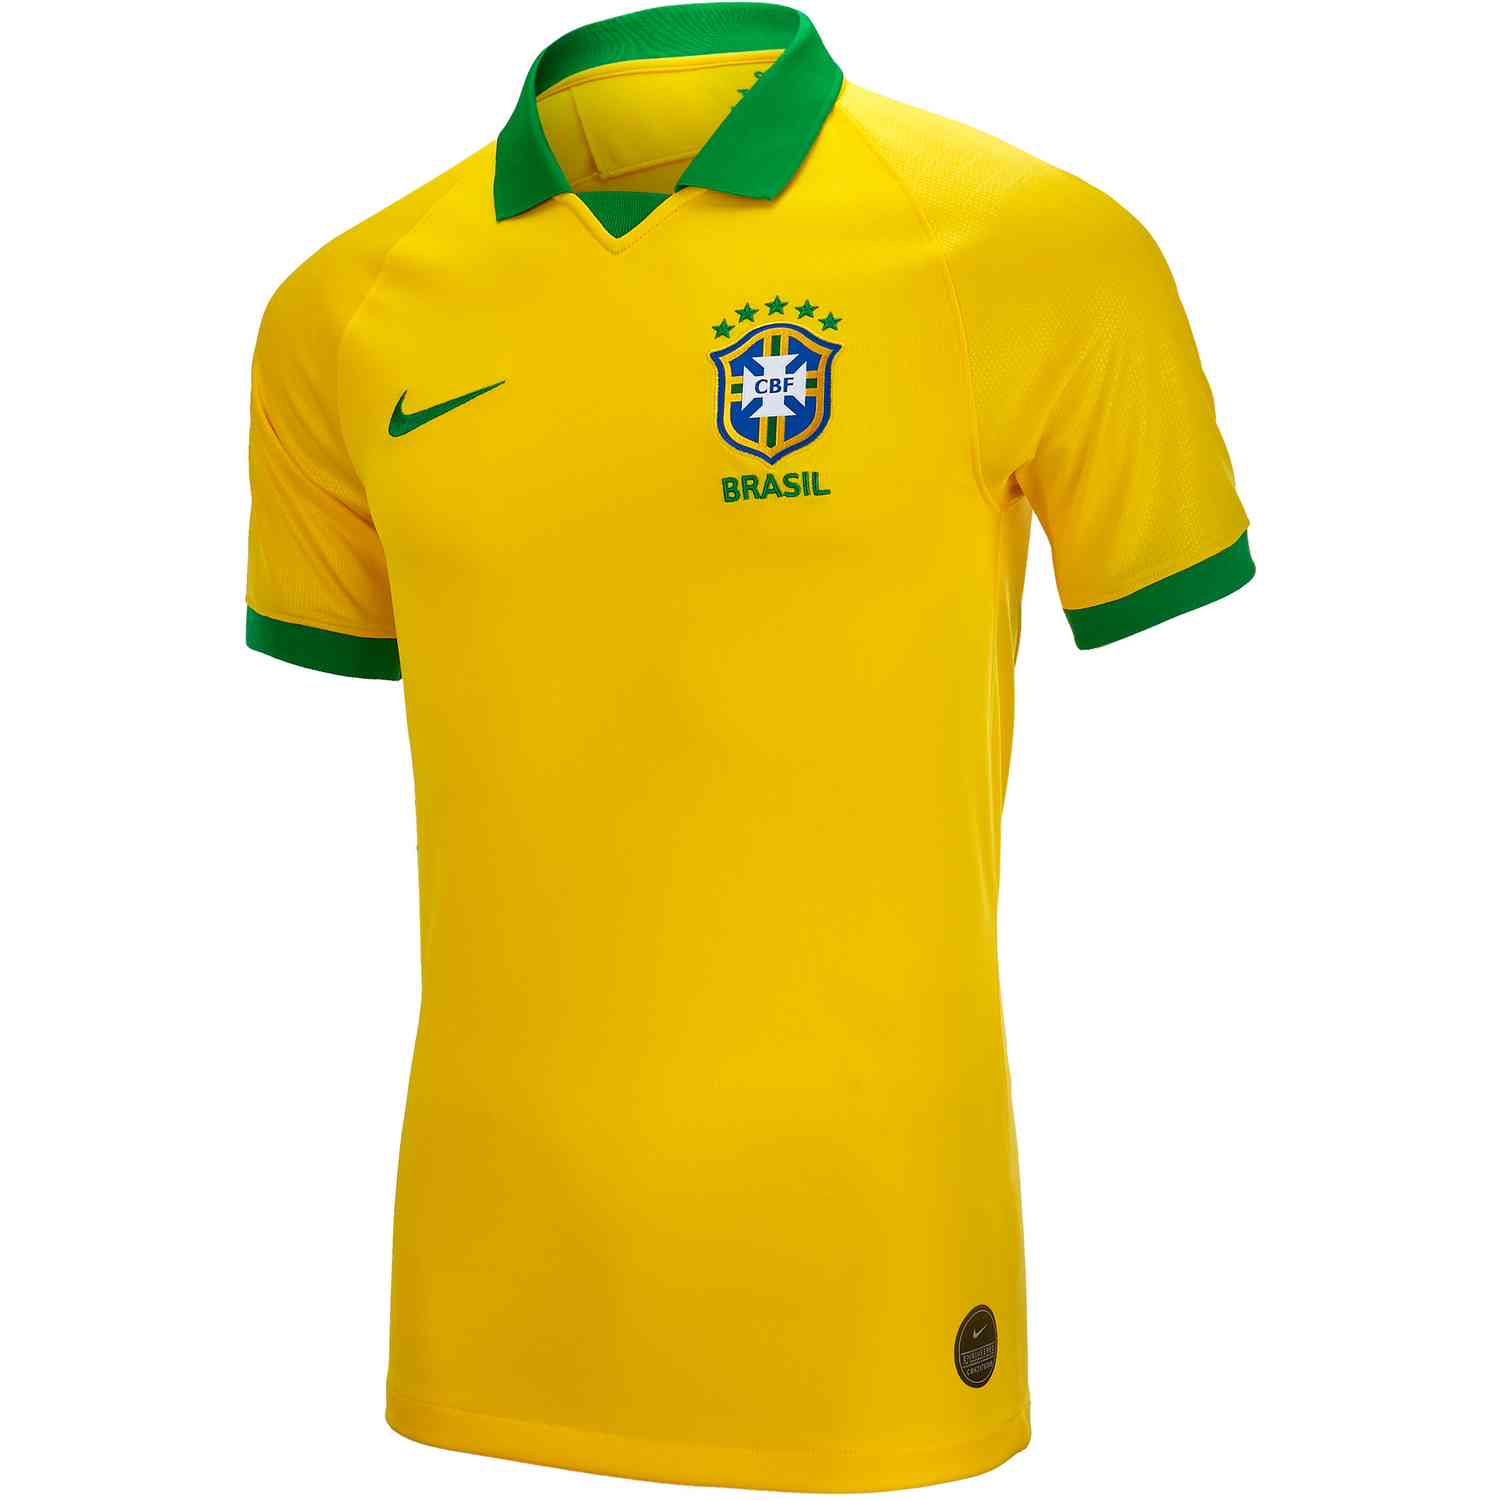 Brazil Jersey 2019 - Soccer